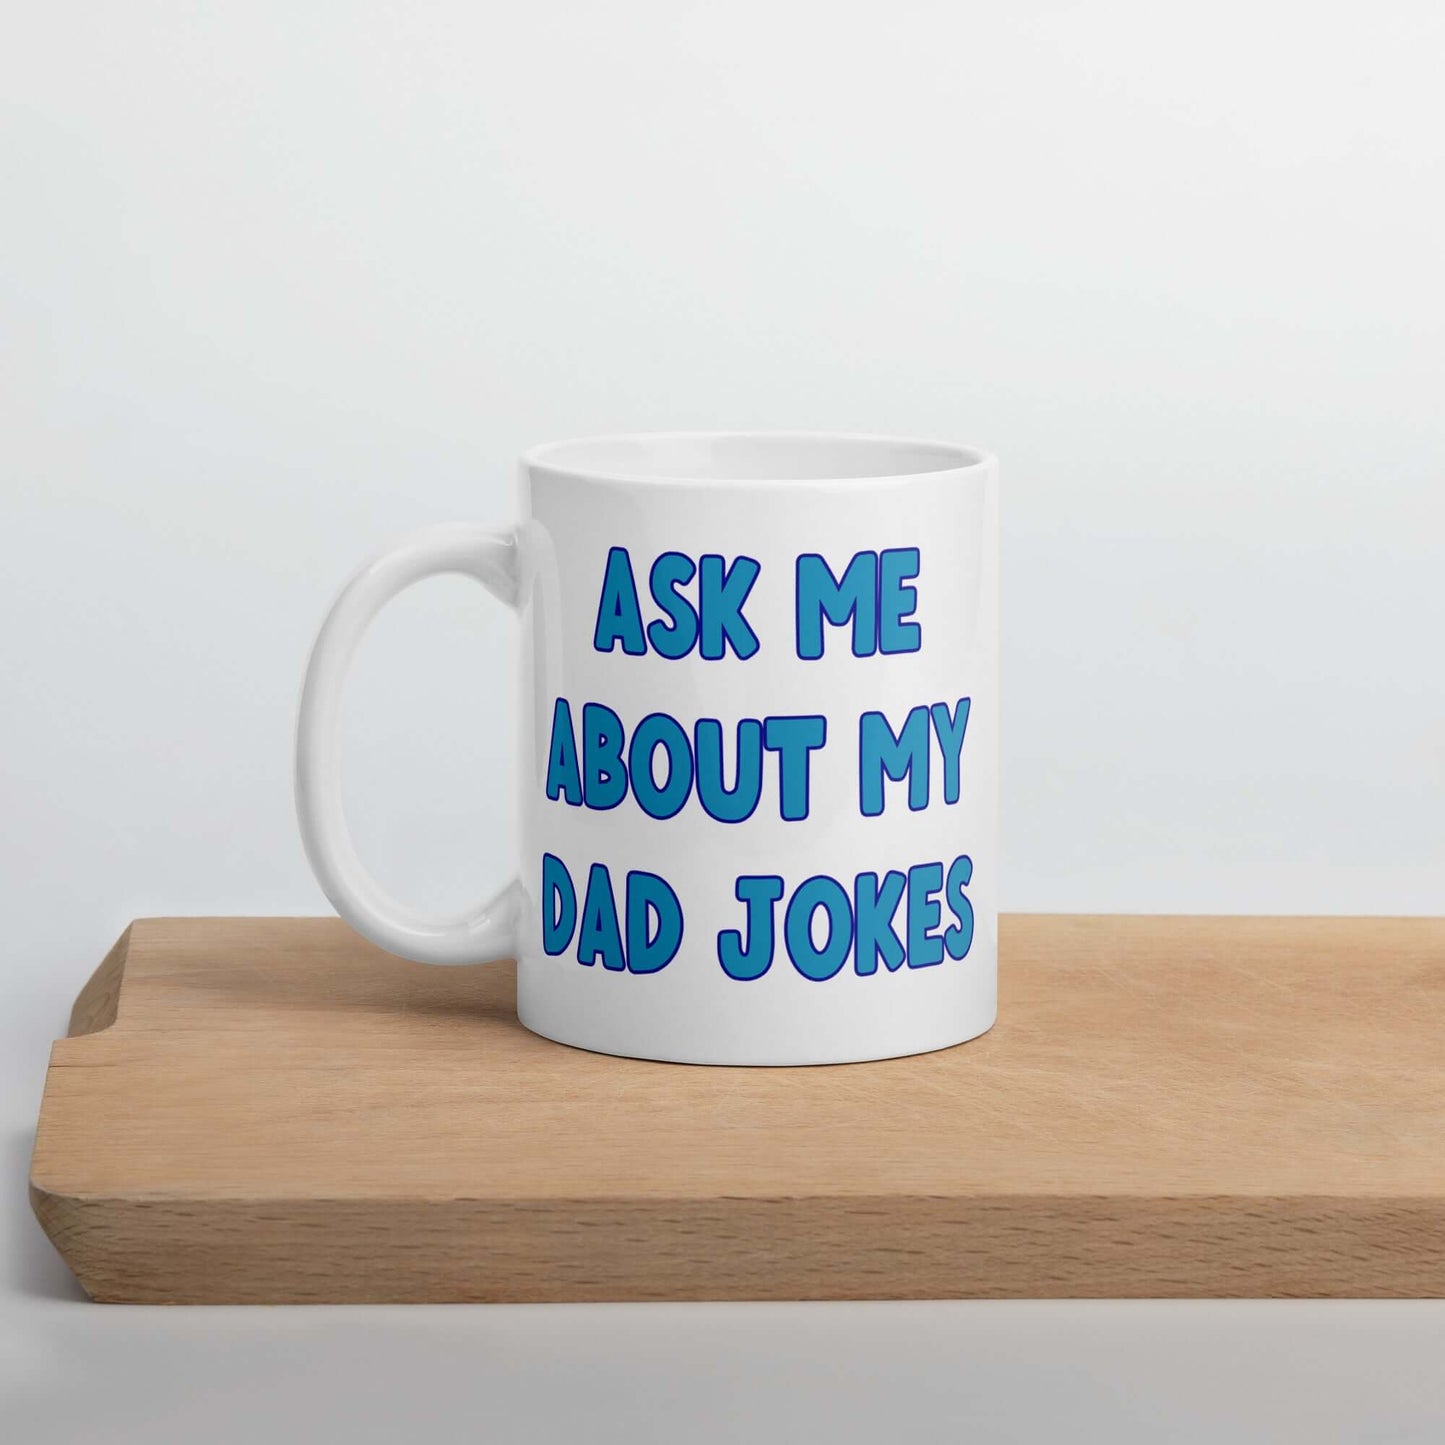 Dad jokes ceramic coffee mug